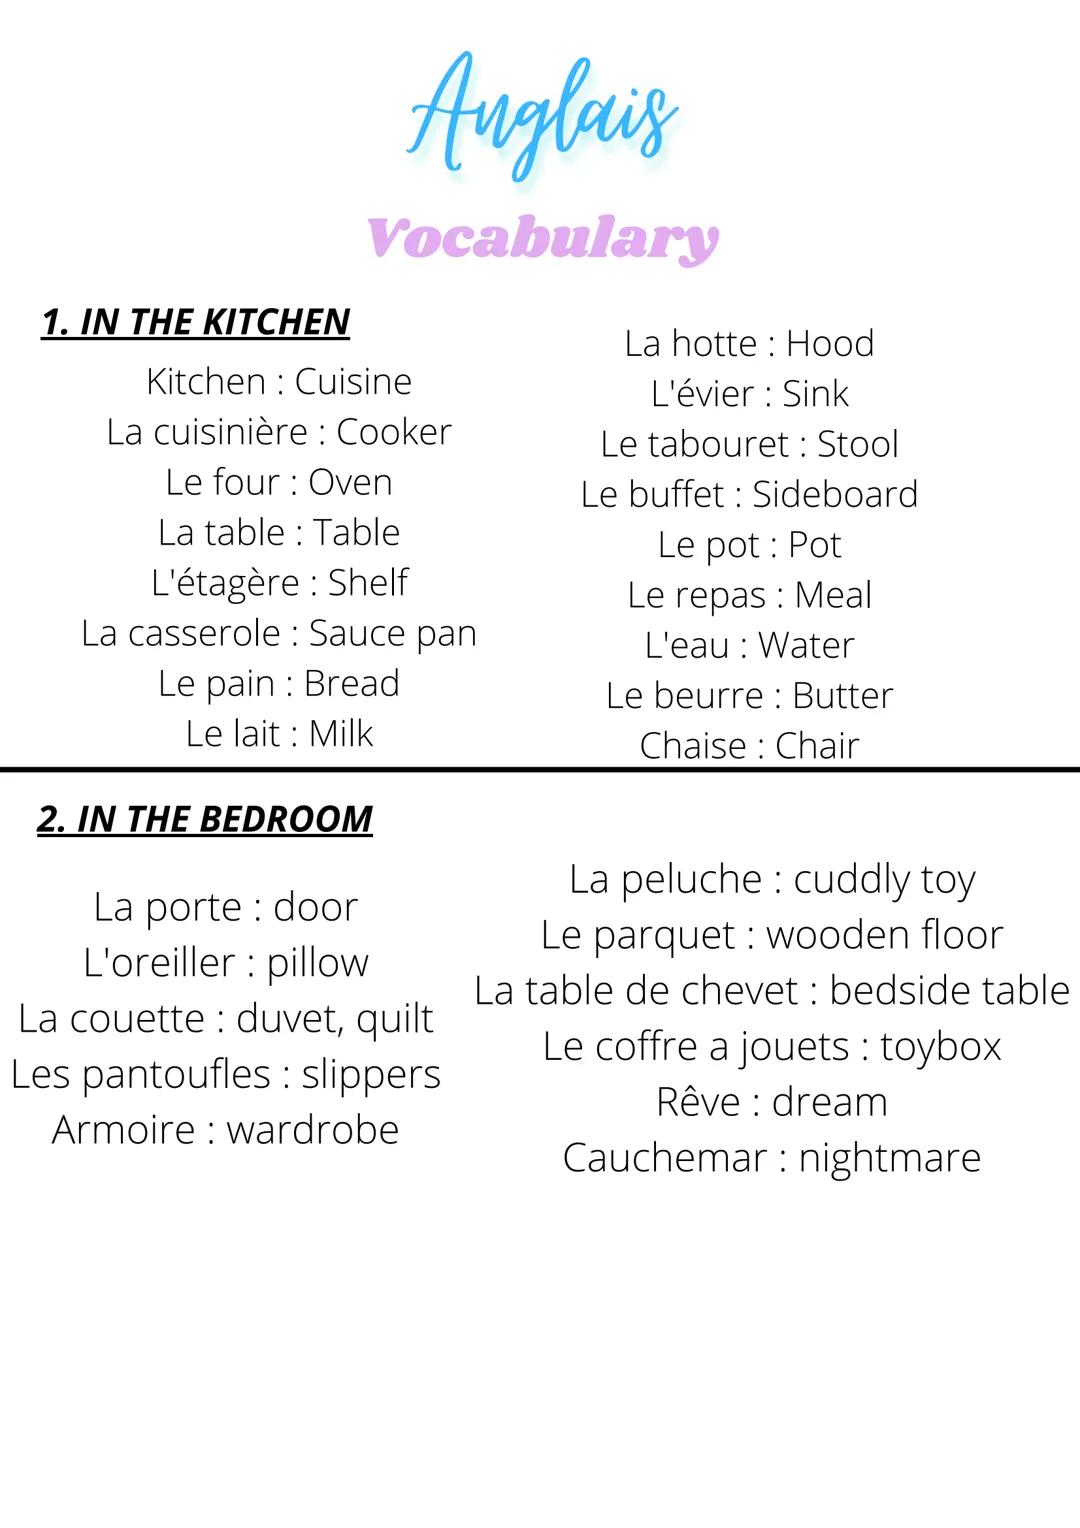 1. IN THE KITCHEN
Anglais
Vocabulary
Kitchen Cuisine
La cuisinière Cooker
Le four: Oven
La table Table
L'étagère : Shelf
La casserole: Sauce